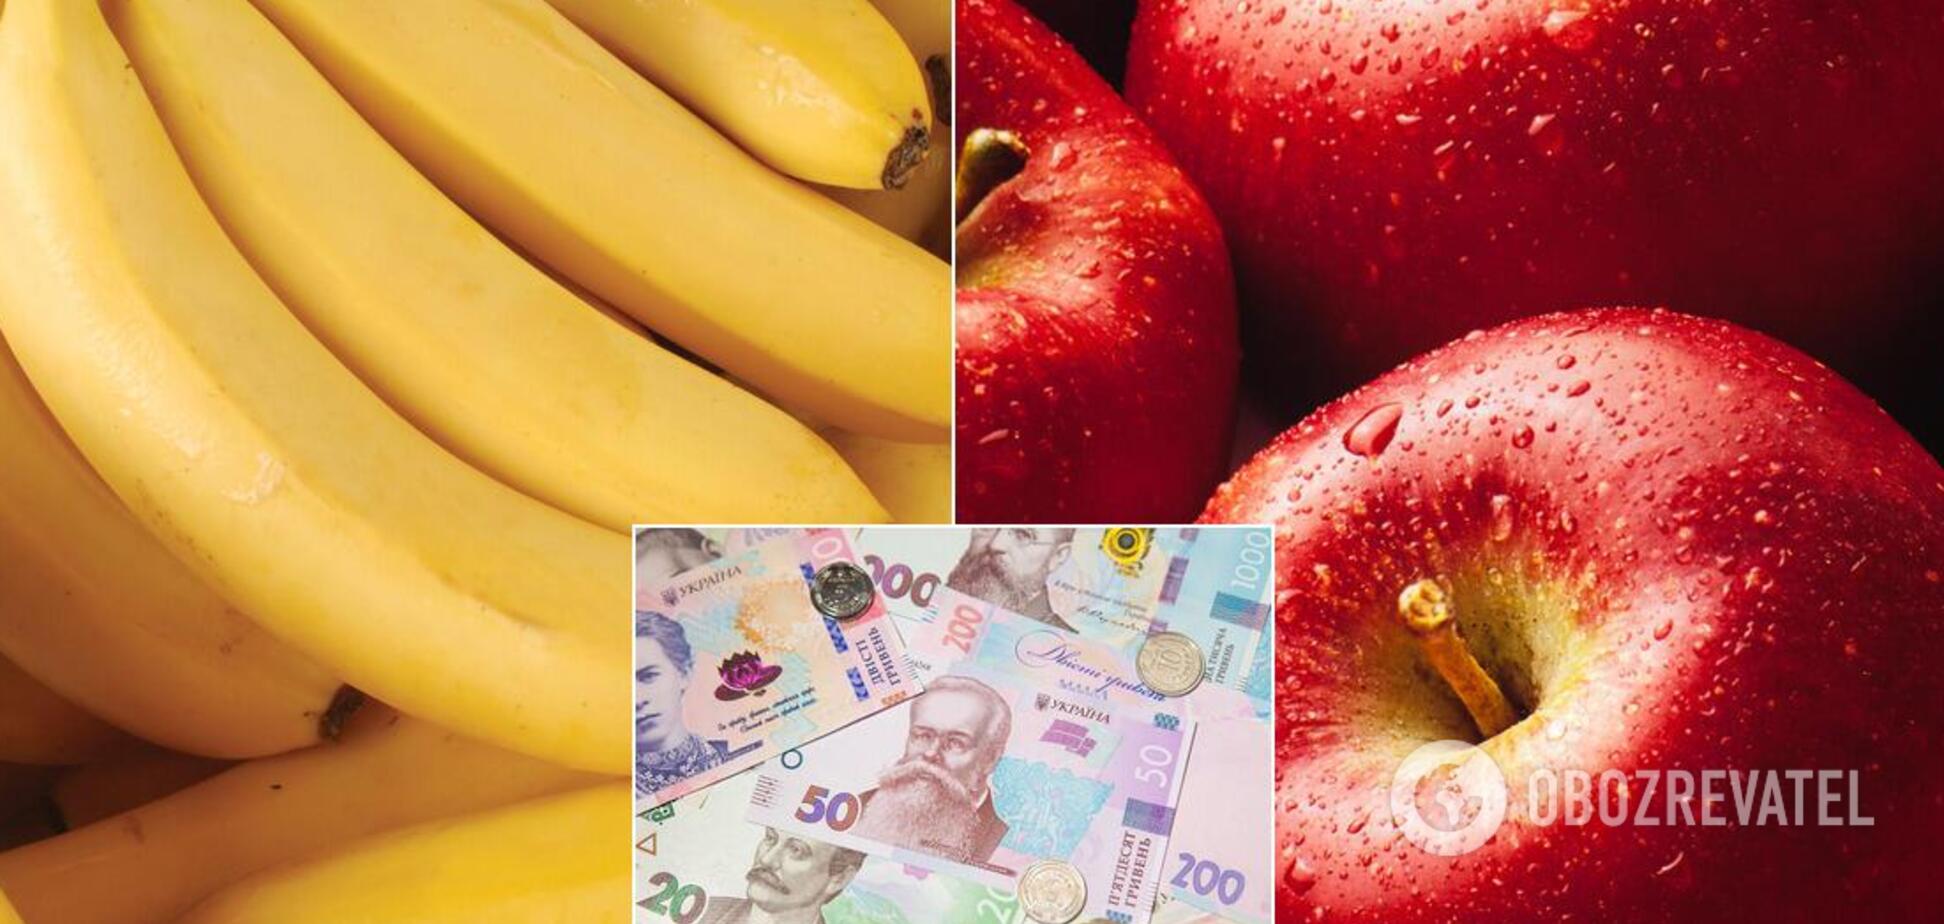 В Украине бананы стали продавать дешевле яблок: сколько стоят